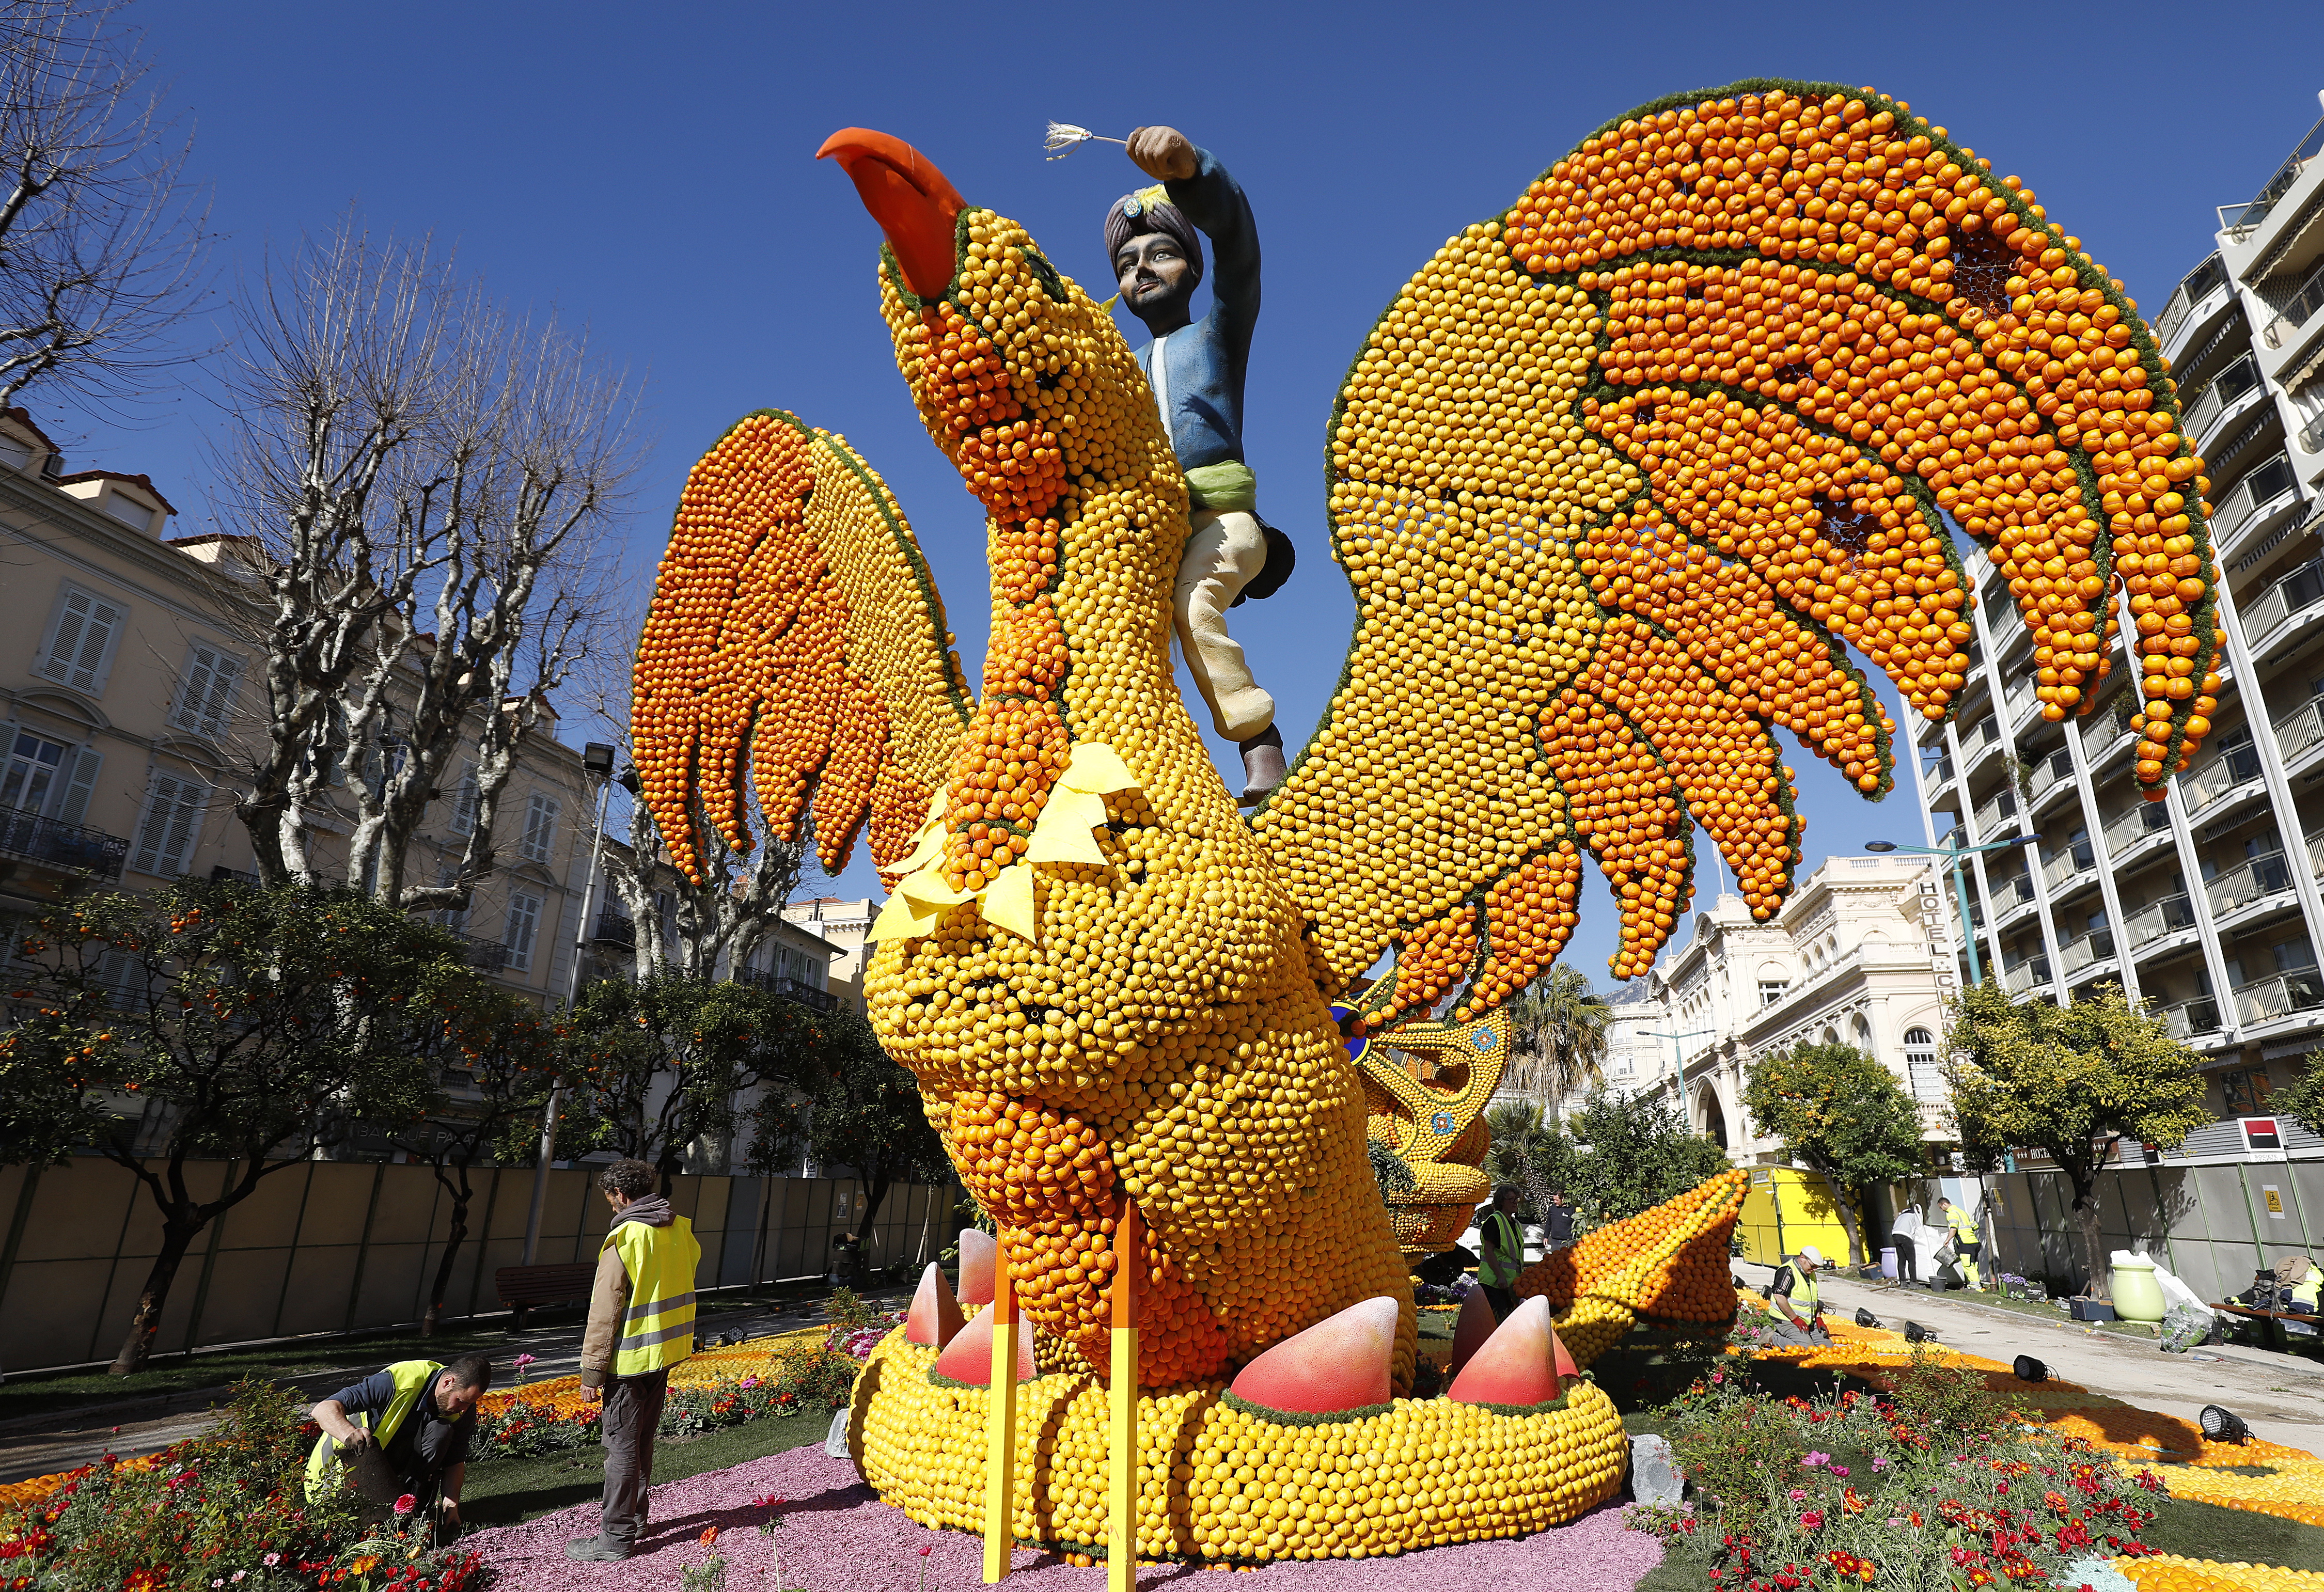 86-ия фестивал на лимона в Ментон, Франция. Тази година фестивалът е на тема "Фантастичните светове" и ще се проведе от 16 февруари до 3 март.